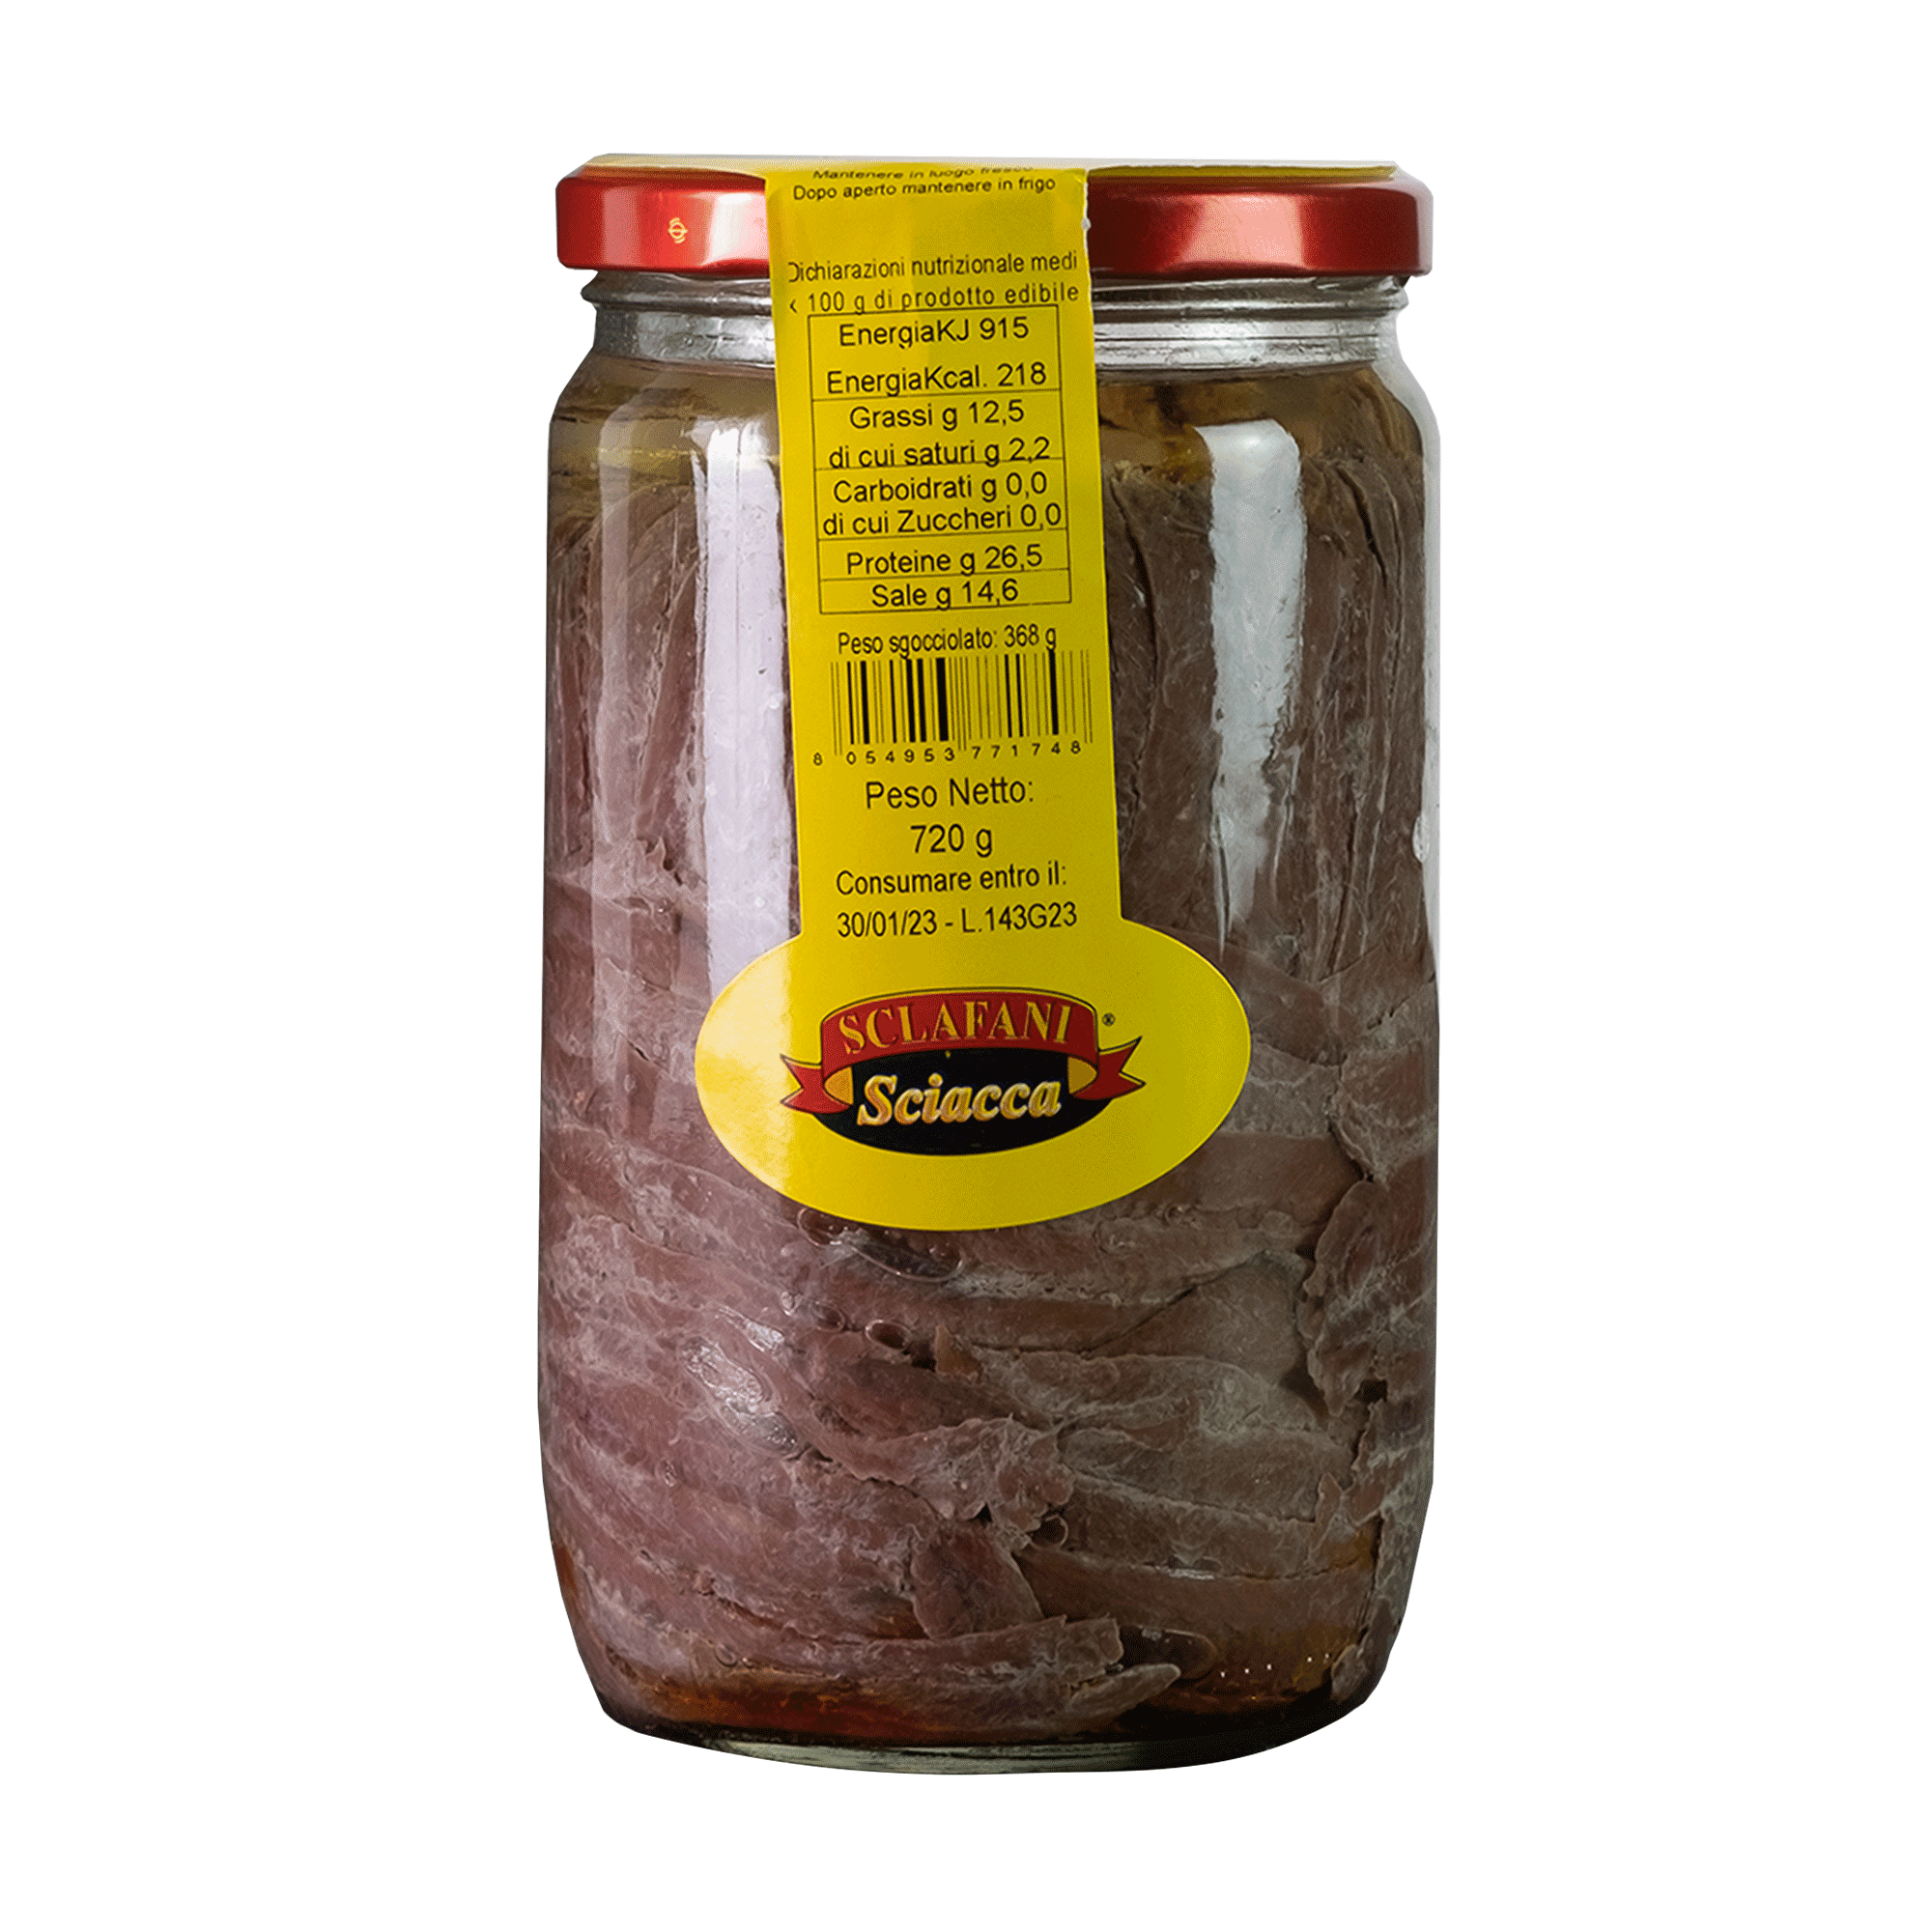 Sardellenfilets in Olivenöl, 720g